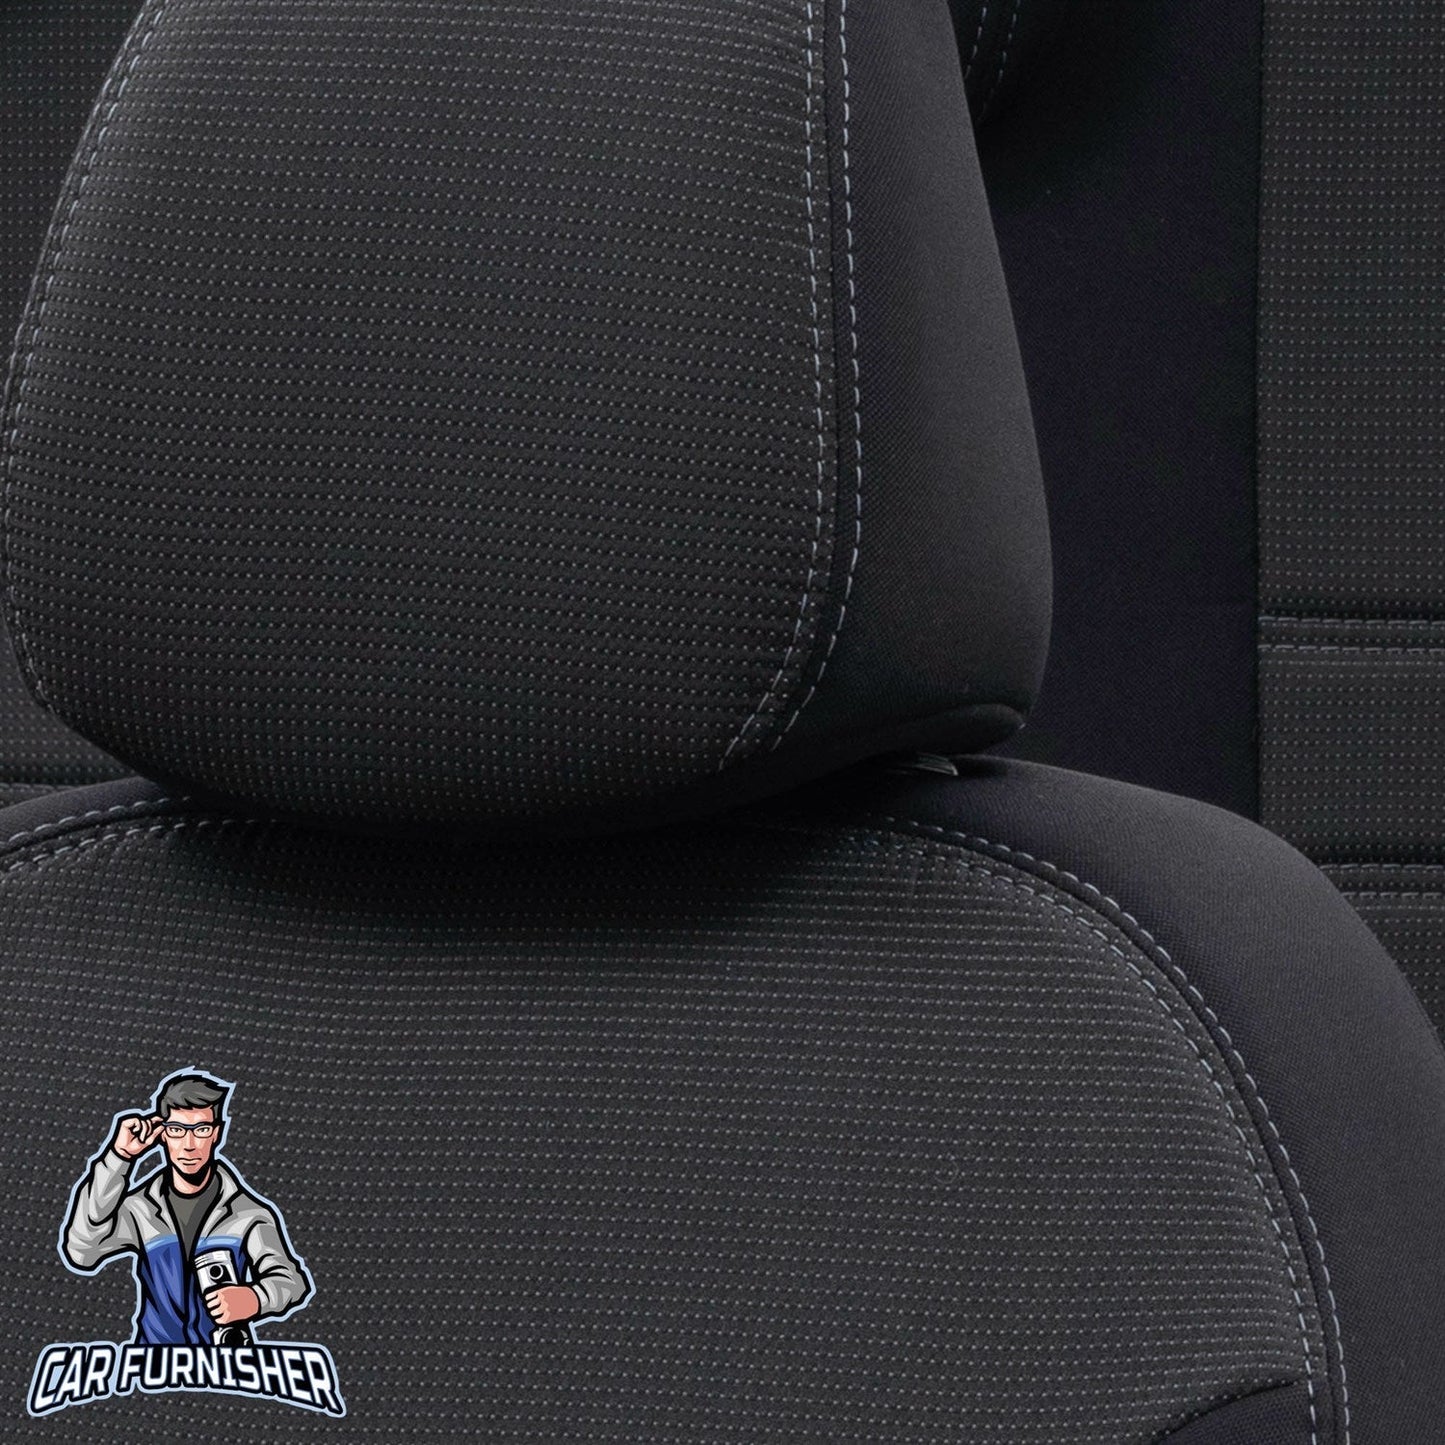 Renault Megane Seat Covers Original Jacquard Design Dark Gray Jacquard Fabric